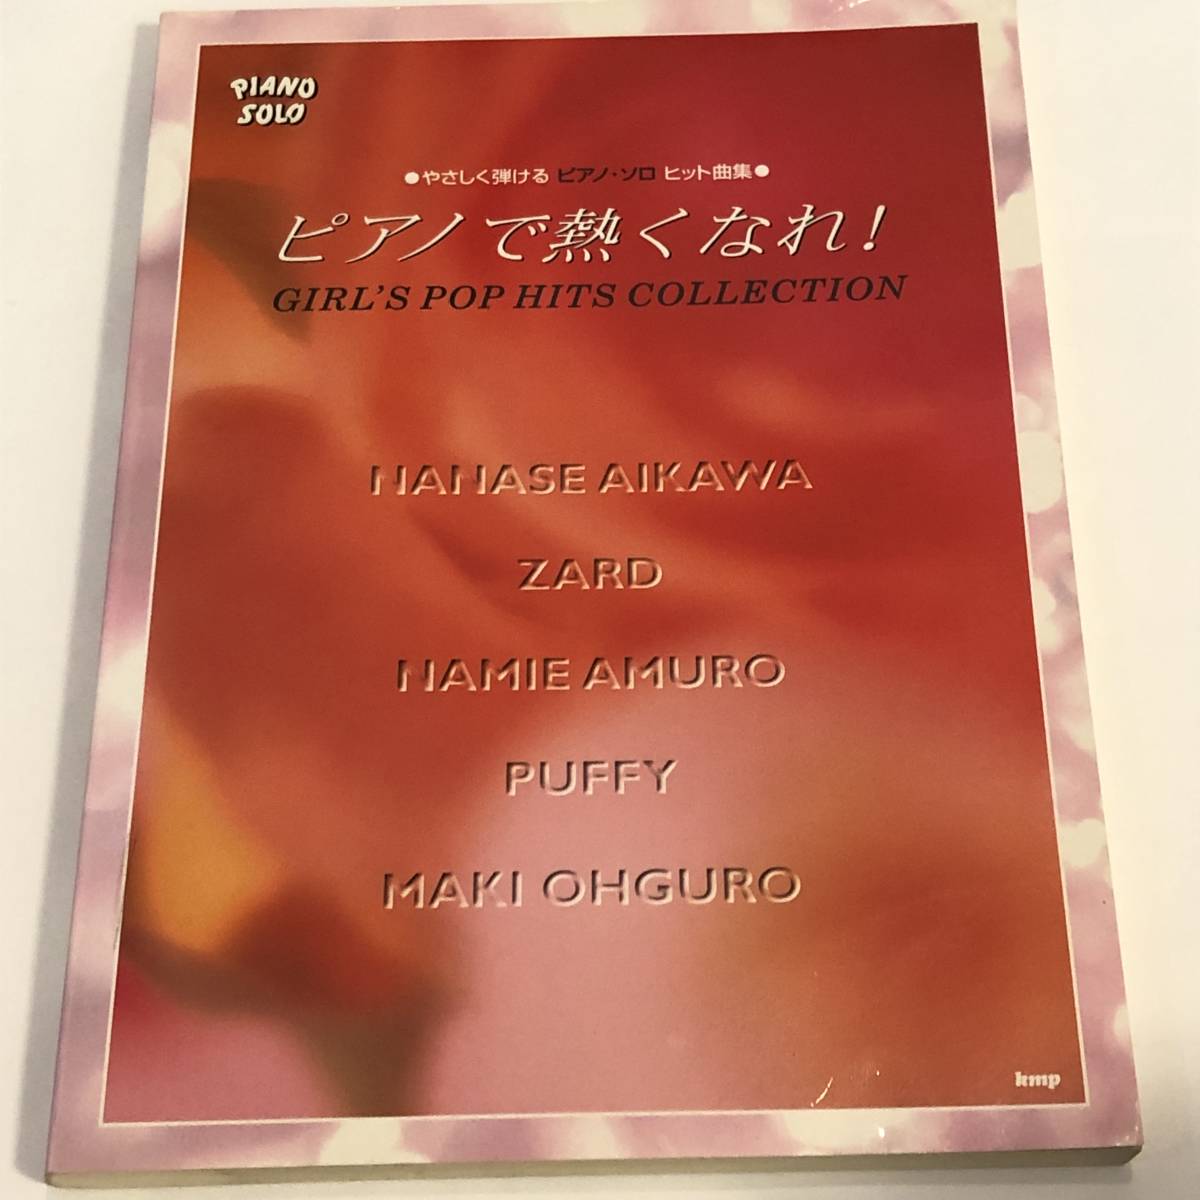  быстрое решение фортепьяно * Solo хит сборник фортепьяно .....! Aikawa Nanase /ZARD/ Amuro Namie /PUFFY/ Ooguro Maki музыкальное сопровождение 